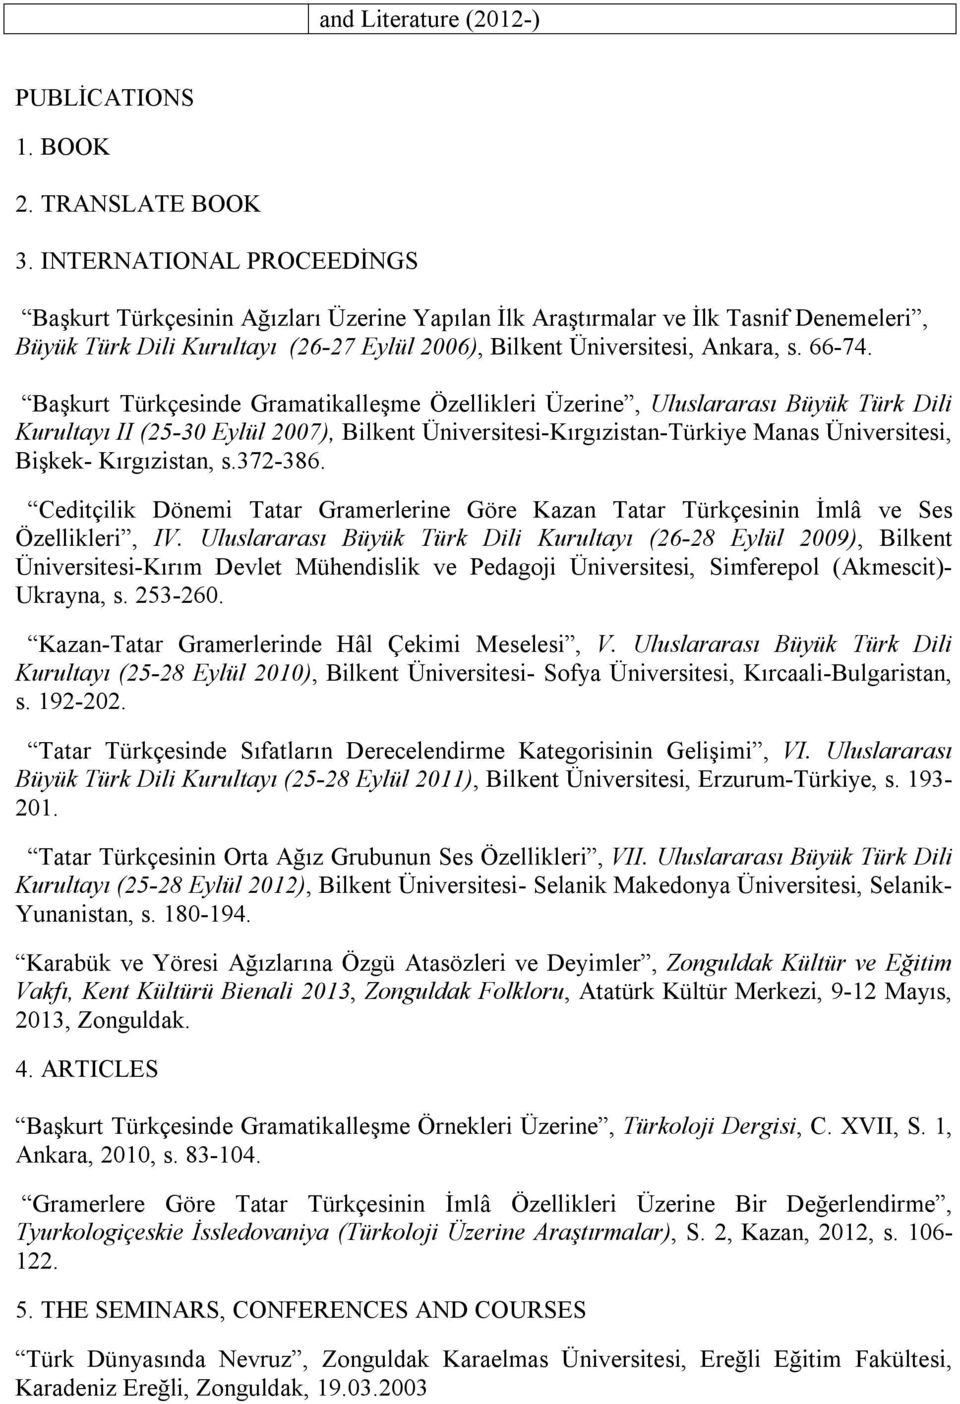 Başkurt Türkçesinde Gramatikalleşme Özellikleri Üzerine, Uluslararası Büyük Türk Dili Kurultayı II (25-30 Eylül 2007), Bilkent Üniversitesi-Kırgızistan-Türkiye Manas Üniversitesi, Bişkek-